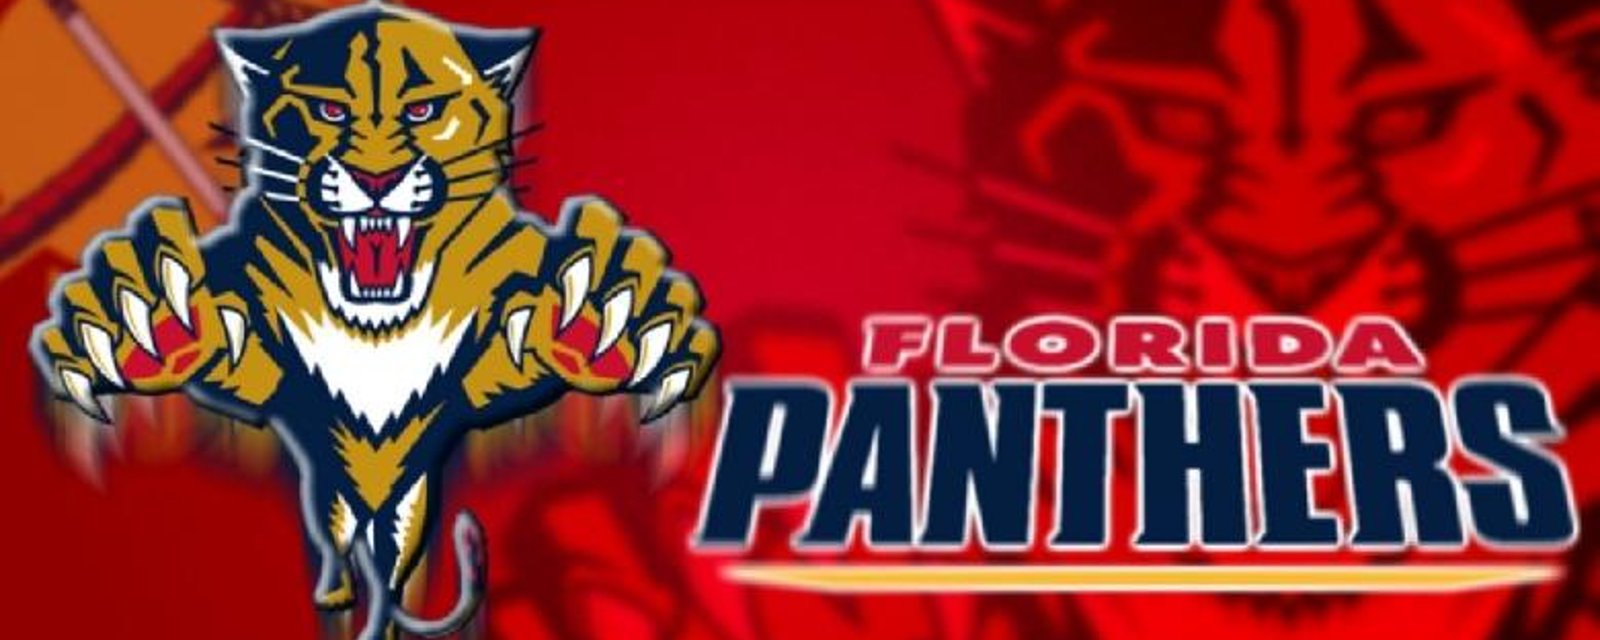 Le nouveau logo des Panthers révélé avant son dévoilement?